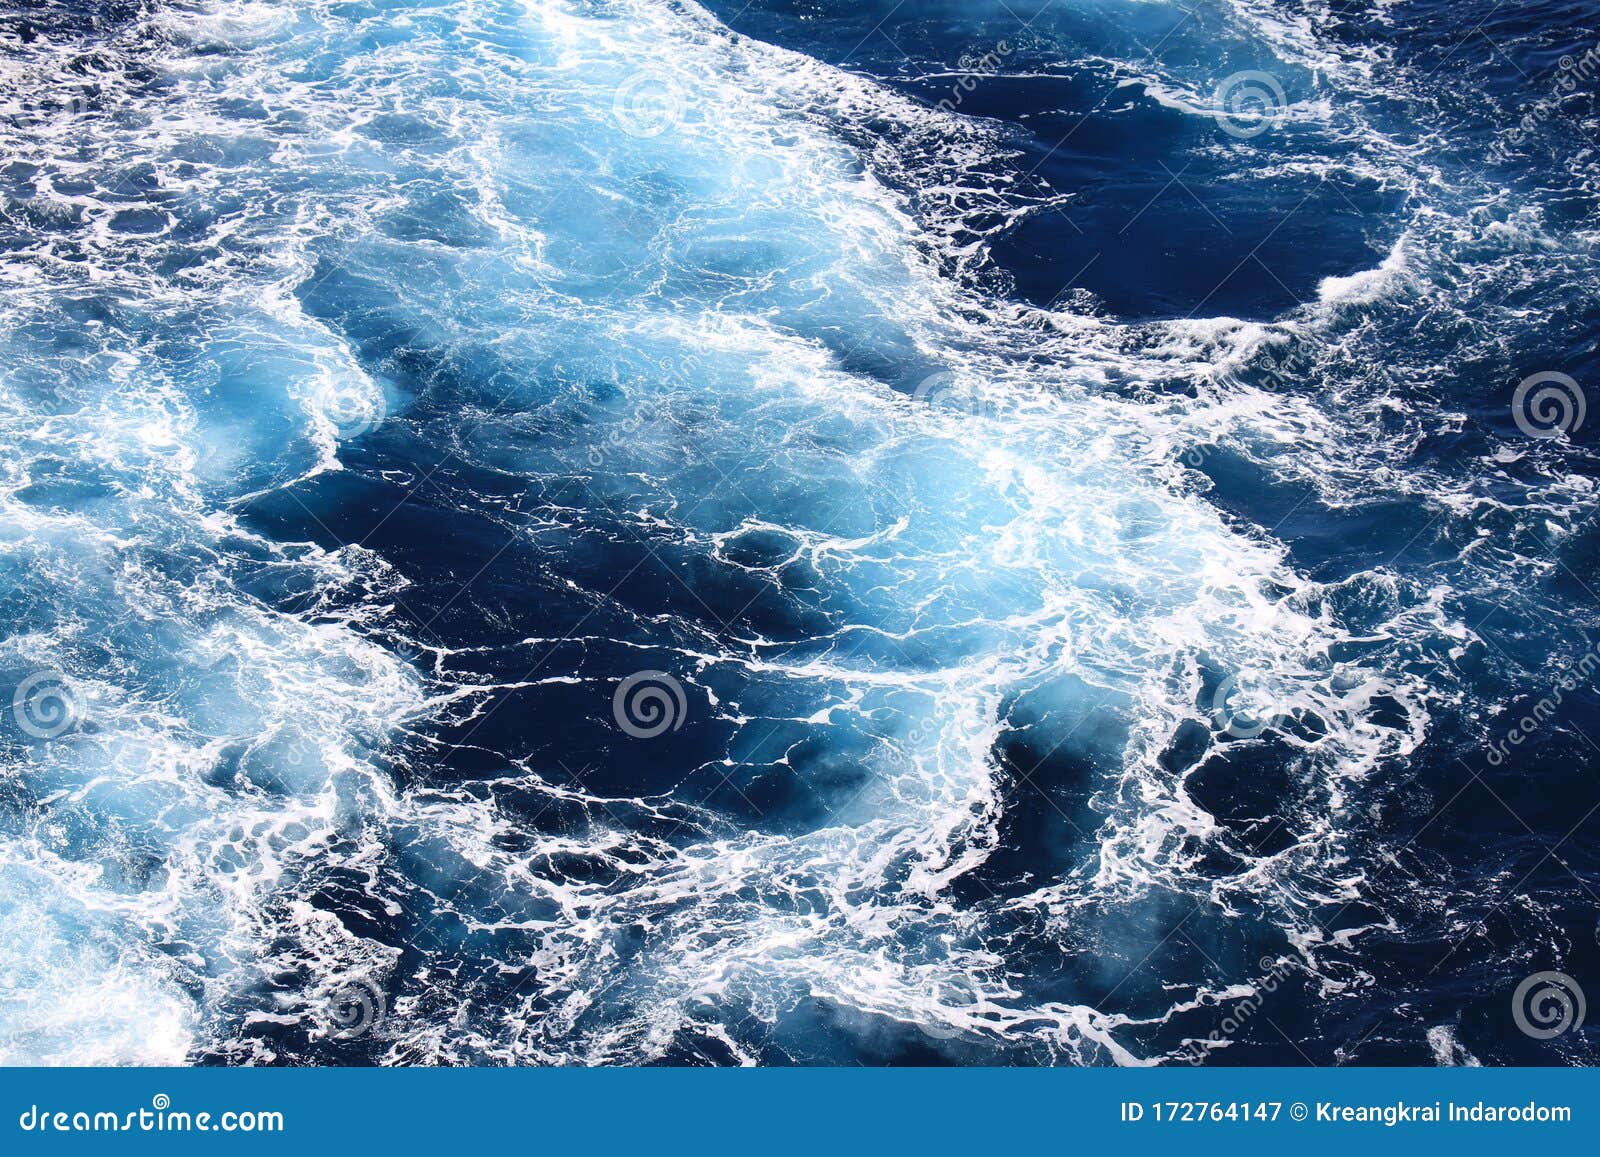 Khi muốn cảm nhận cảm giác thỏa mãn và sự yên bình tuyệt vời, hãy để mắt tập trung vào hình nền sóng biển màu nước xanh đậm và bọt biển từ không gian này. Hình ảnh mang đến cho bạn cảm giác đắm chìm trong không gian mênh mông của đại dương. Hãy tải ngay bức ảnh này để hưởng thụ cảm giác tuyệt vời từ đại dương!